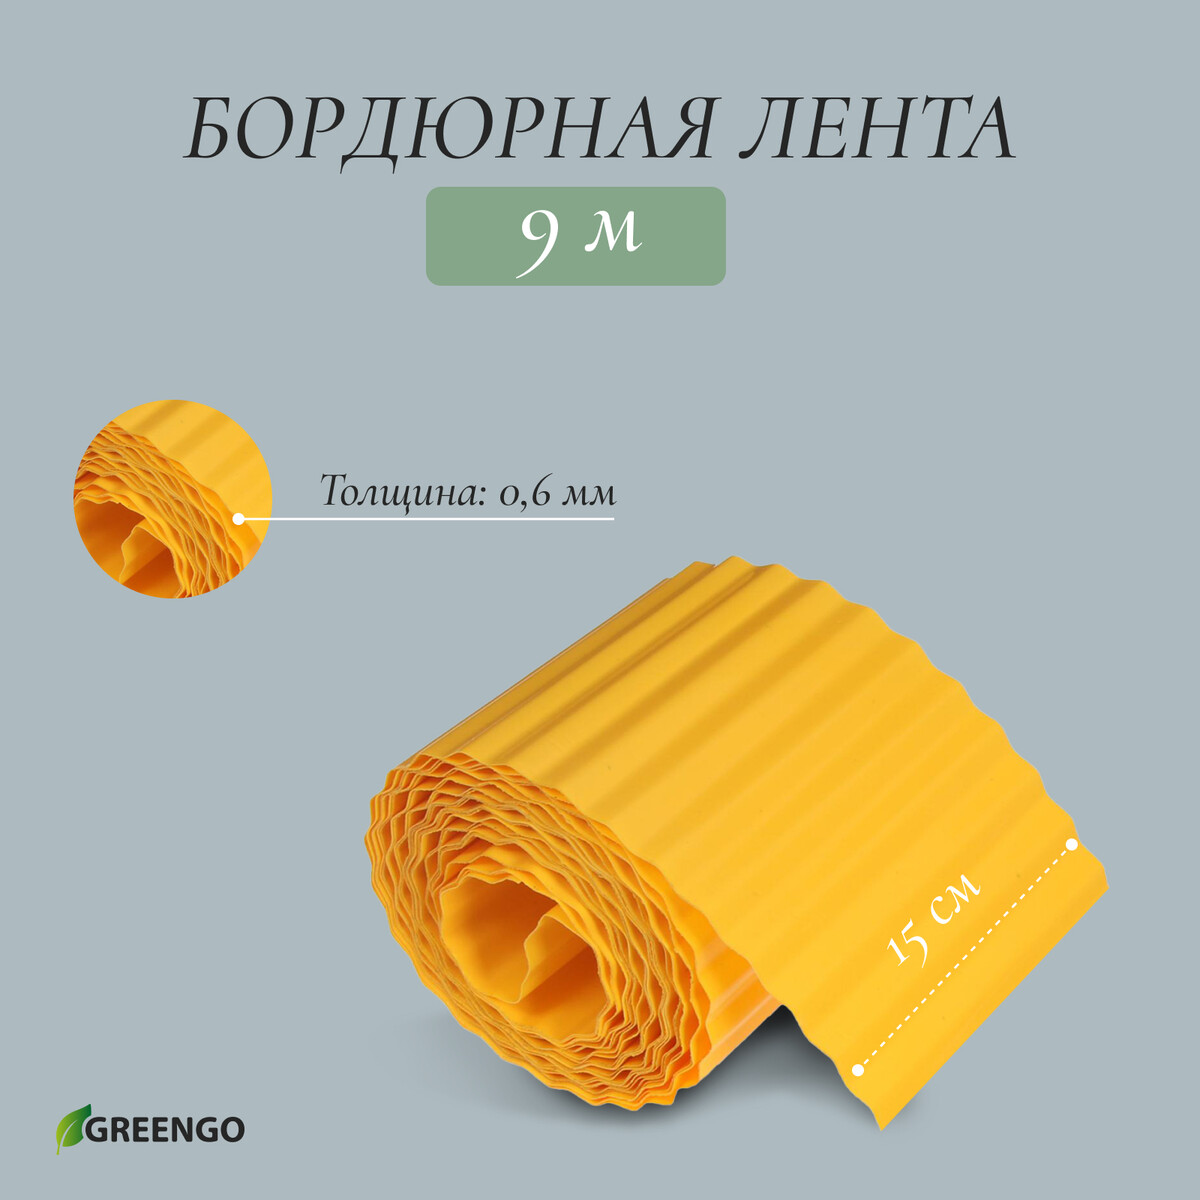 Лента бордюрная, 0.15 × 9 м, толщина 0.6 мм, пластиковая, гофра, желтая лента бордюрная 0 2 × 10 м толщина 1 2 мм пластиковая желтая greengo